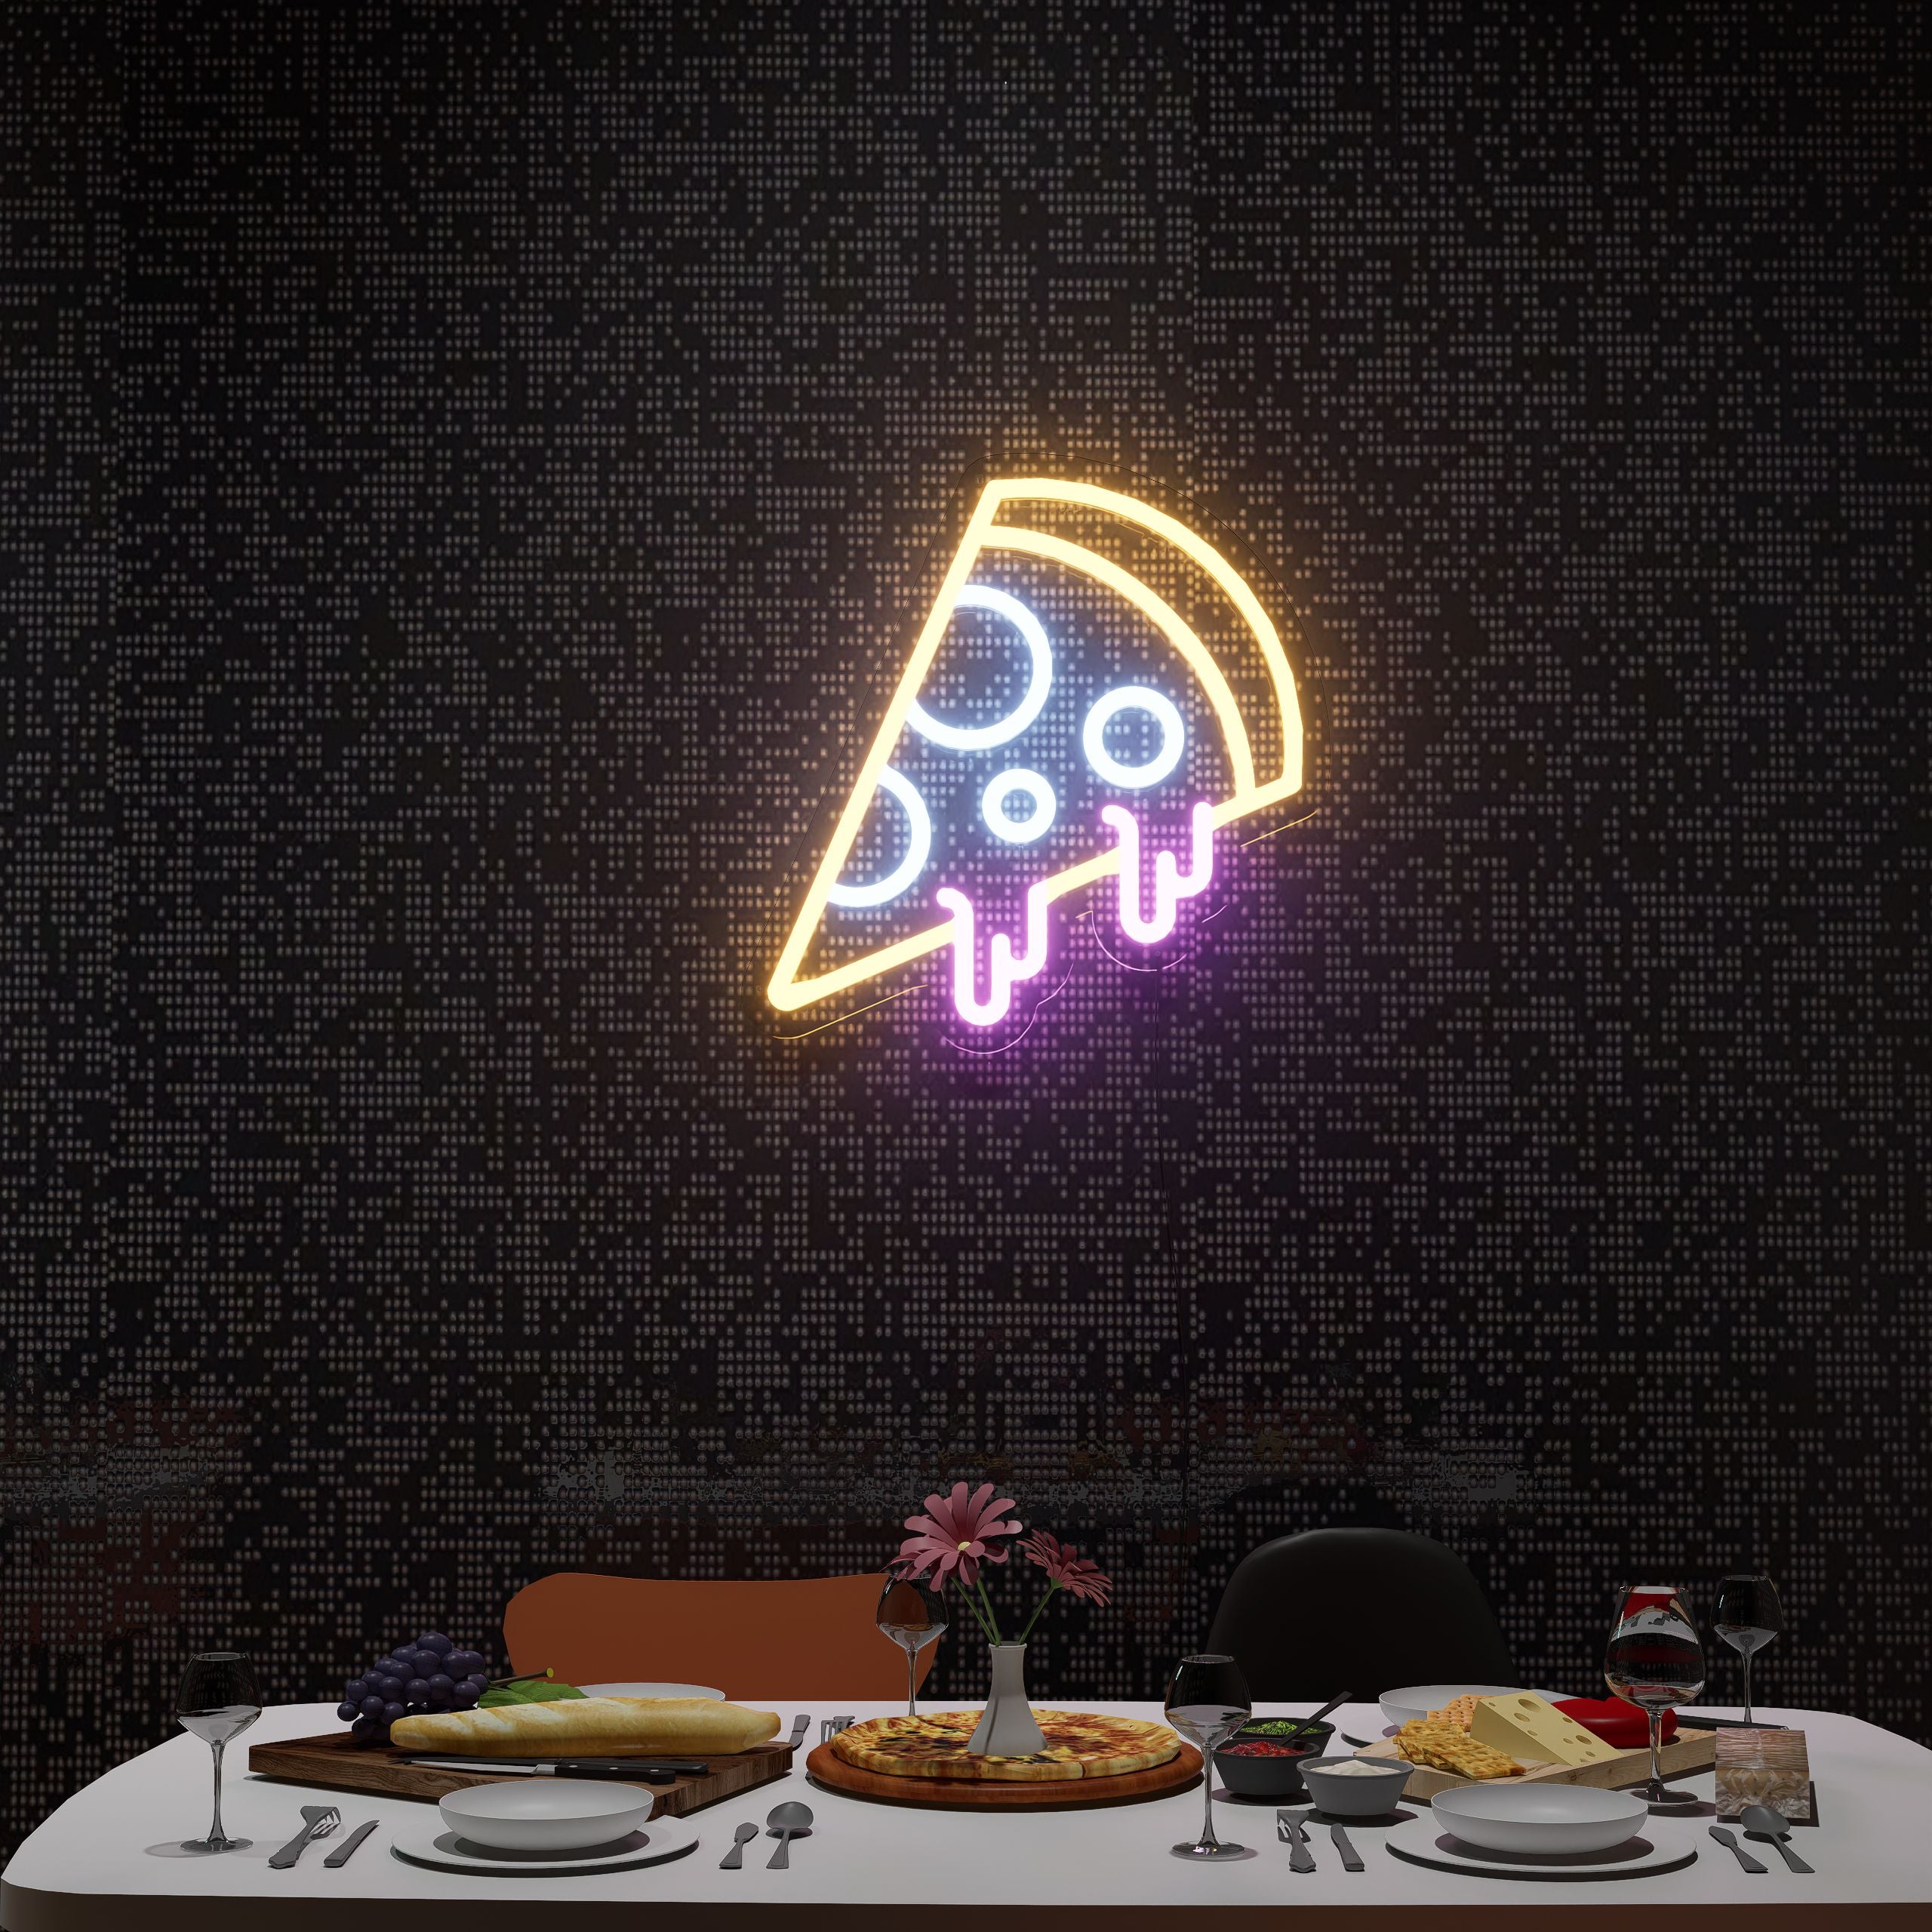 Ultimate-Pizza-Delight-Neon-Sign-Lite